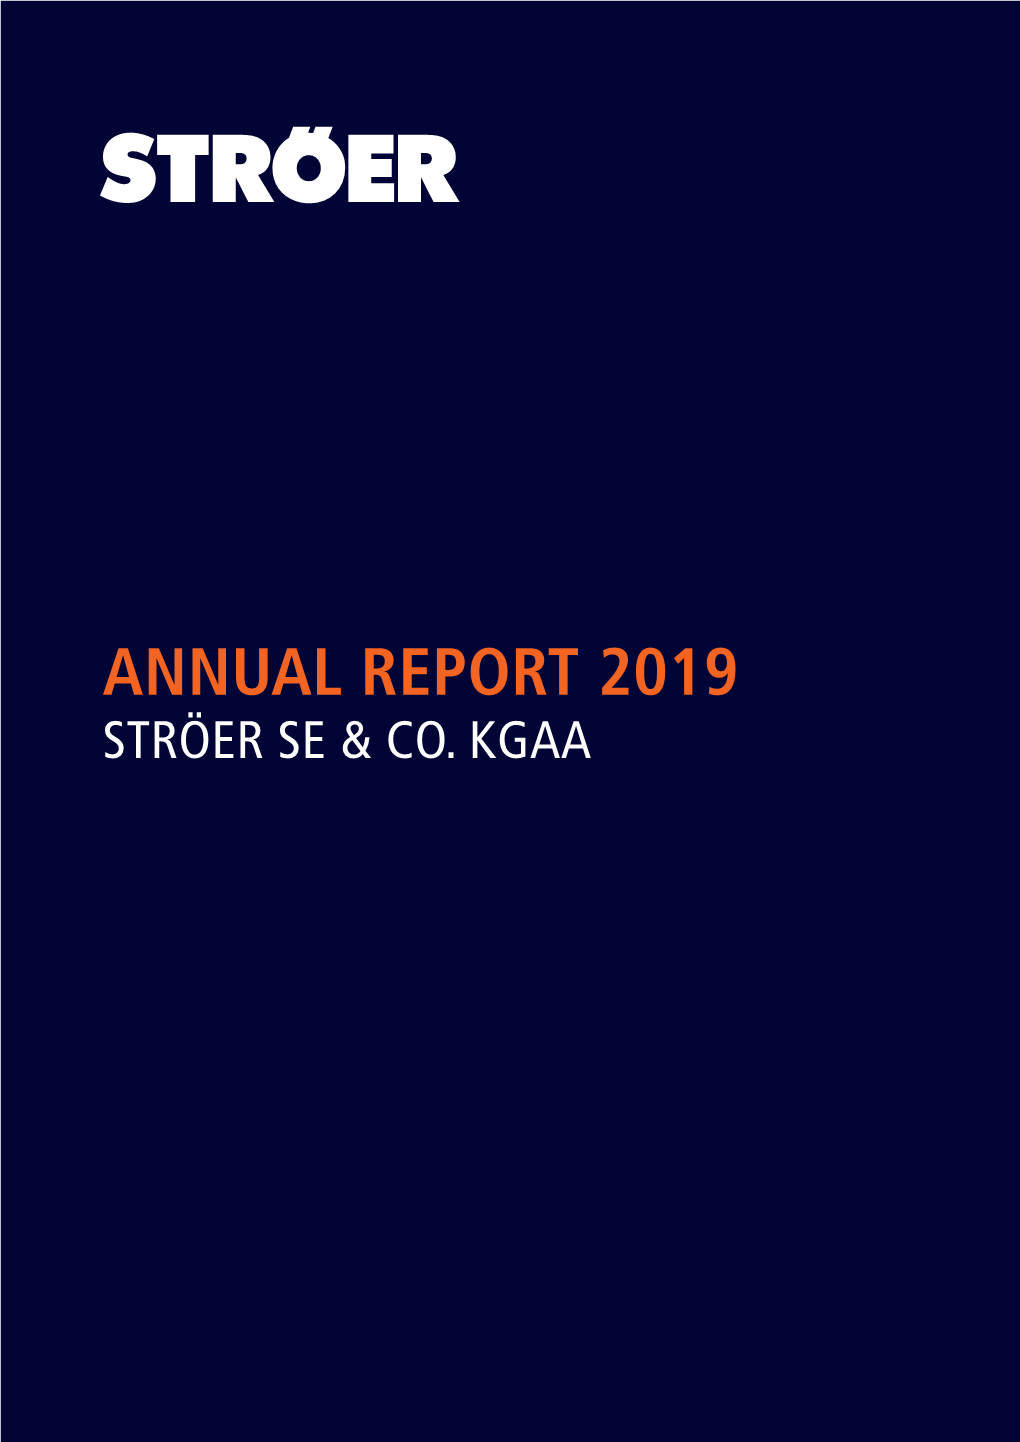 Annual Report 2019 Ströer Se & Co